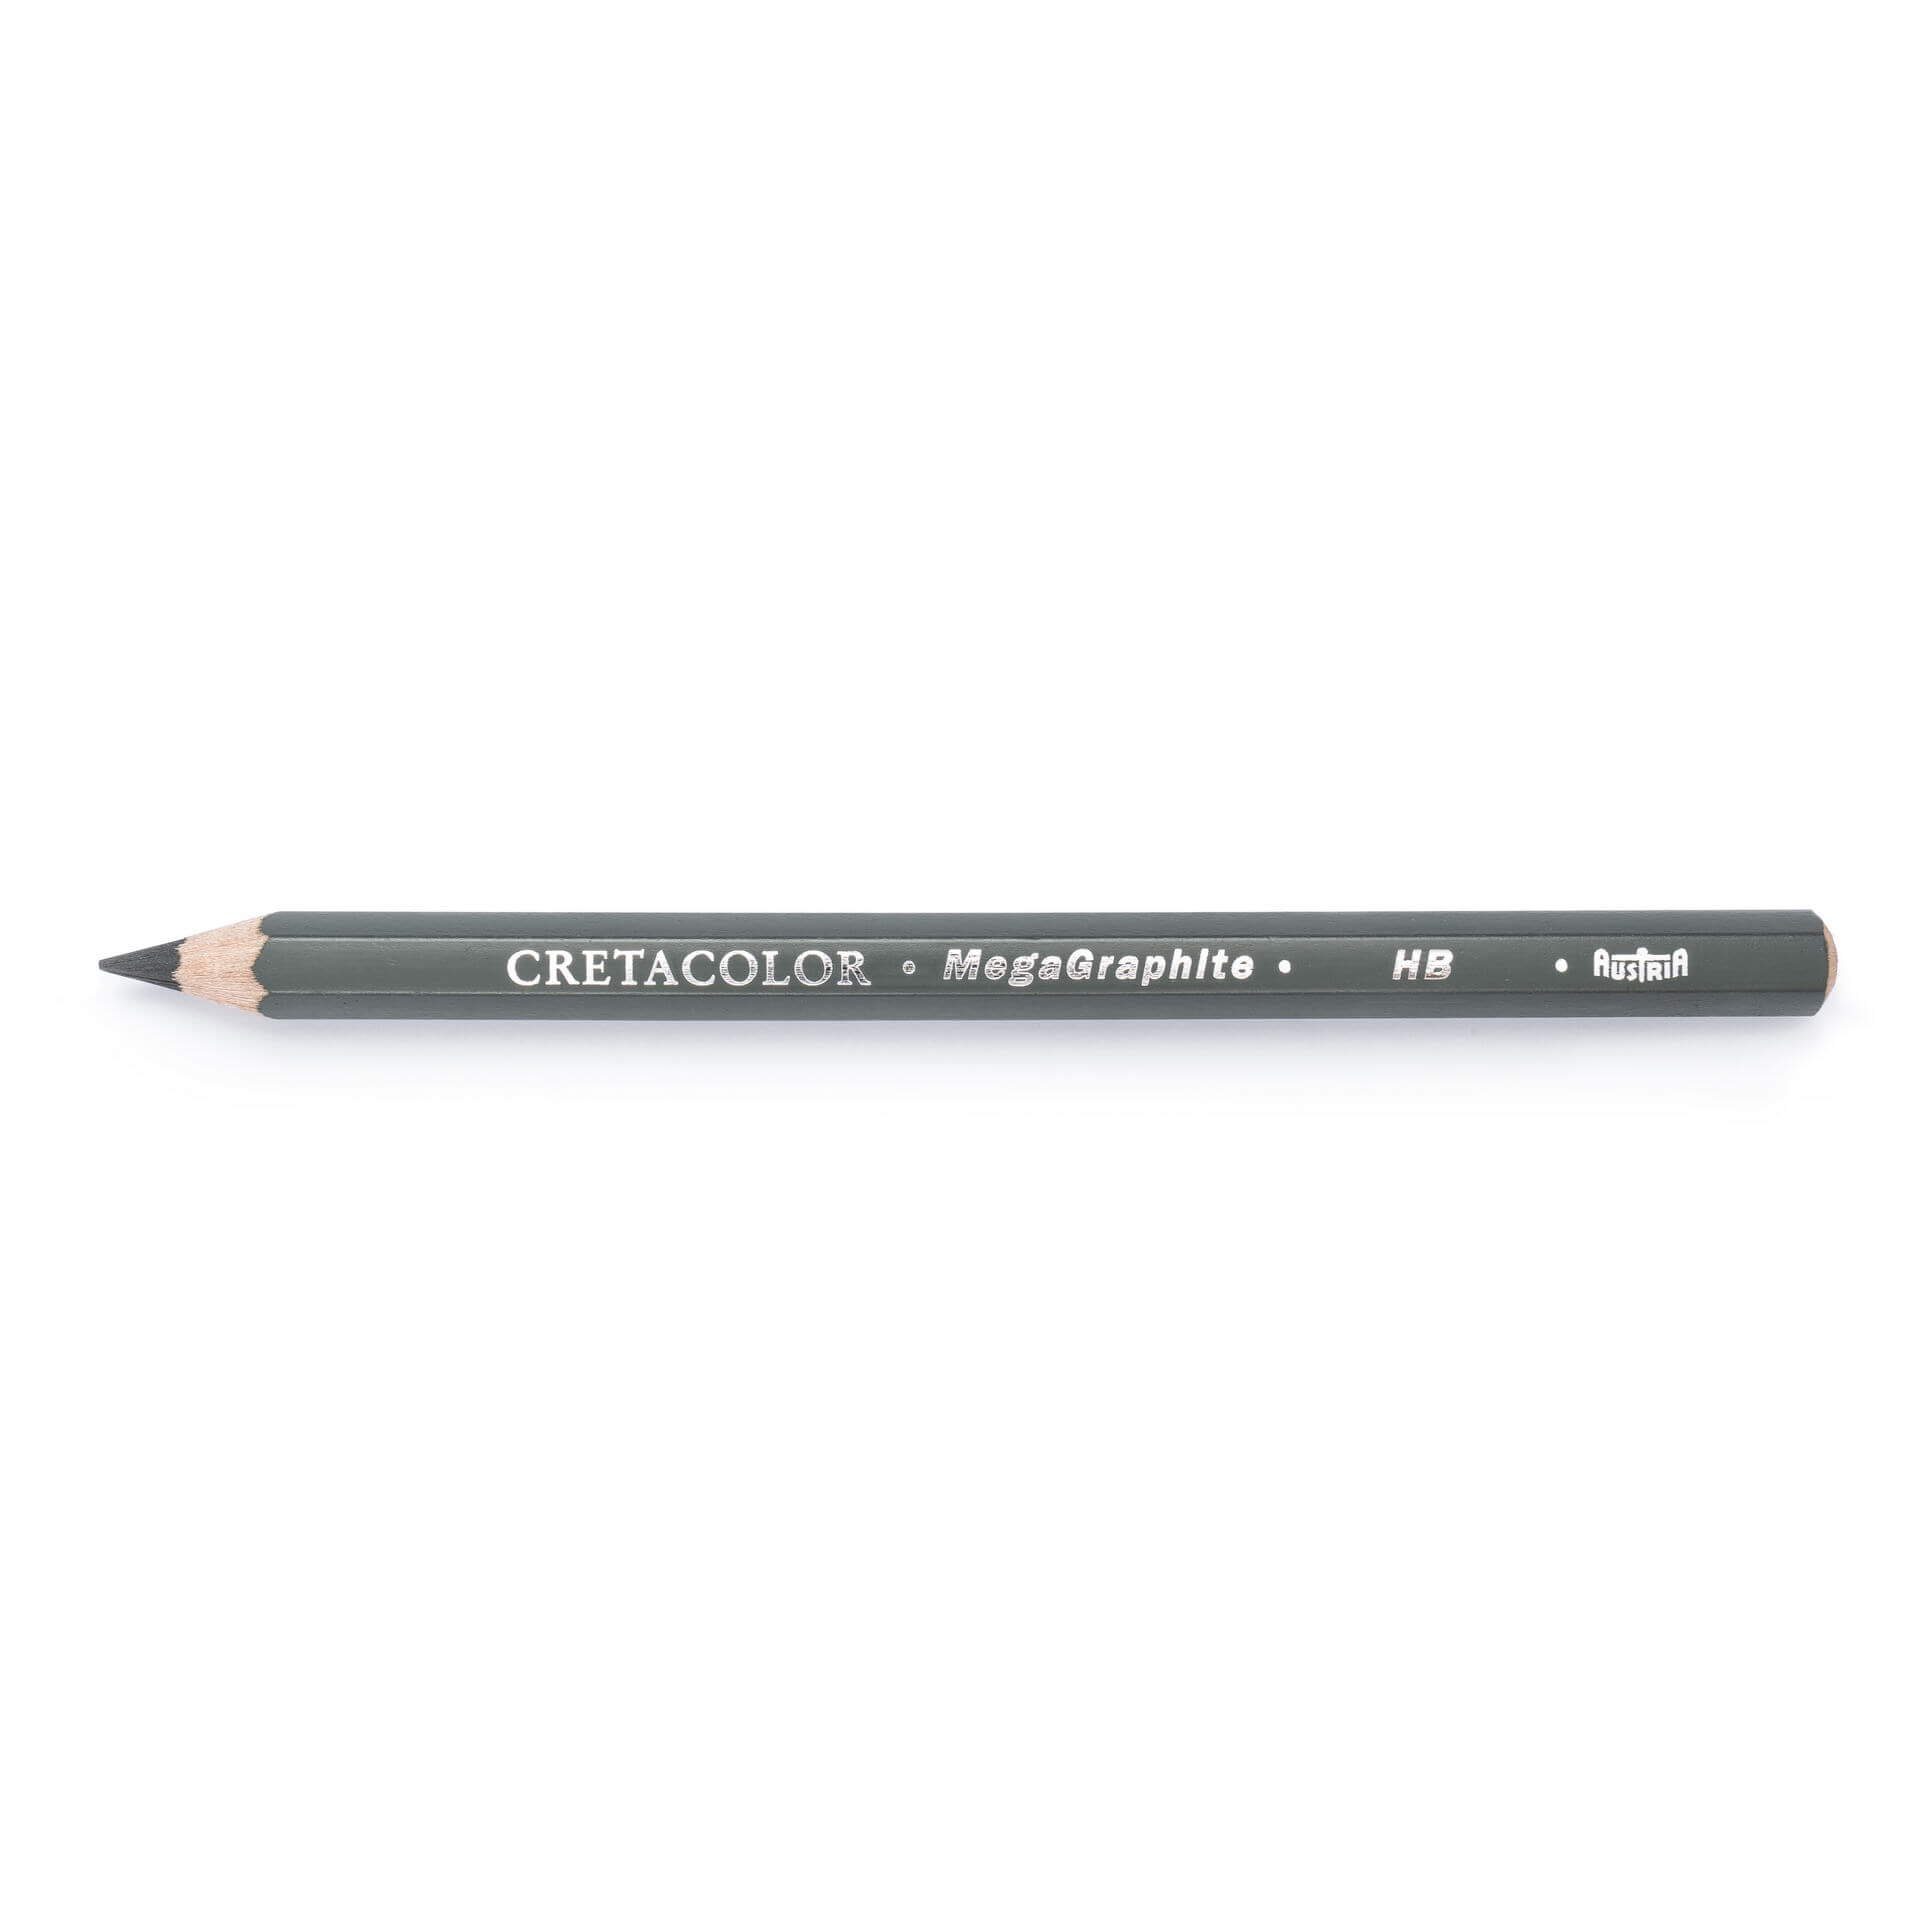 Brevilliers Cretacolor Bleistift 341 00, MegaGraphit 42er, Perfekt zum Skizzieren und Zeichnen - Made in Austria